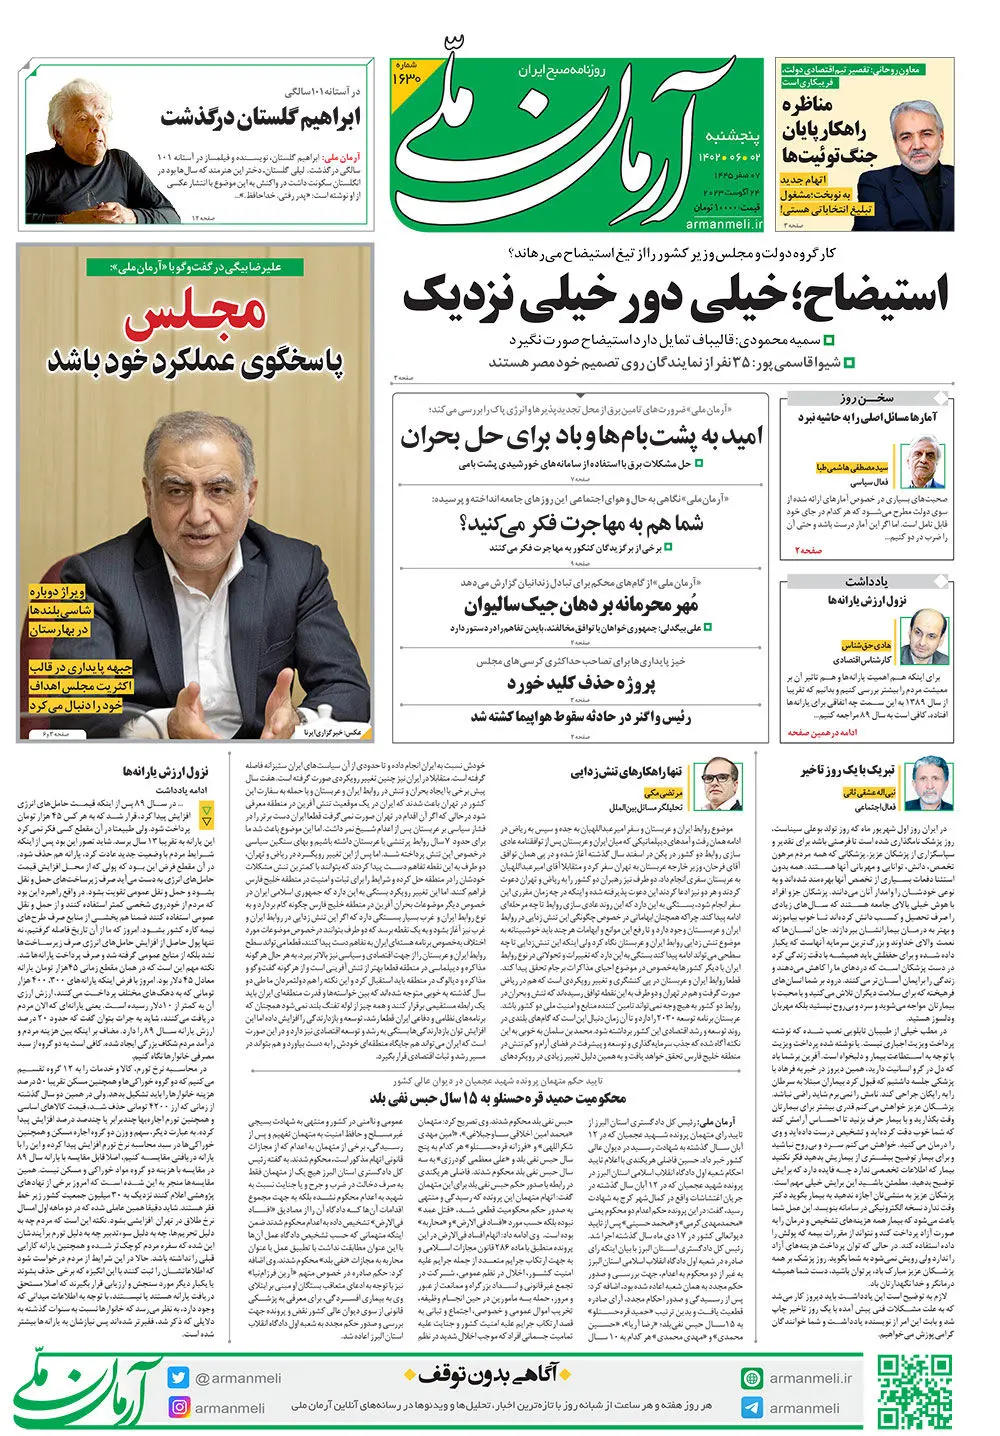 روزنامه آرمان ملی - پنجشنبه 2 شهریور - شماره 1630